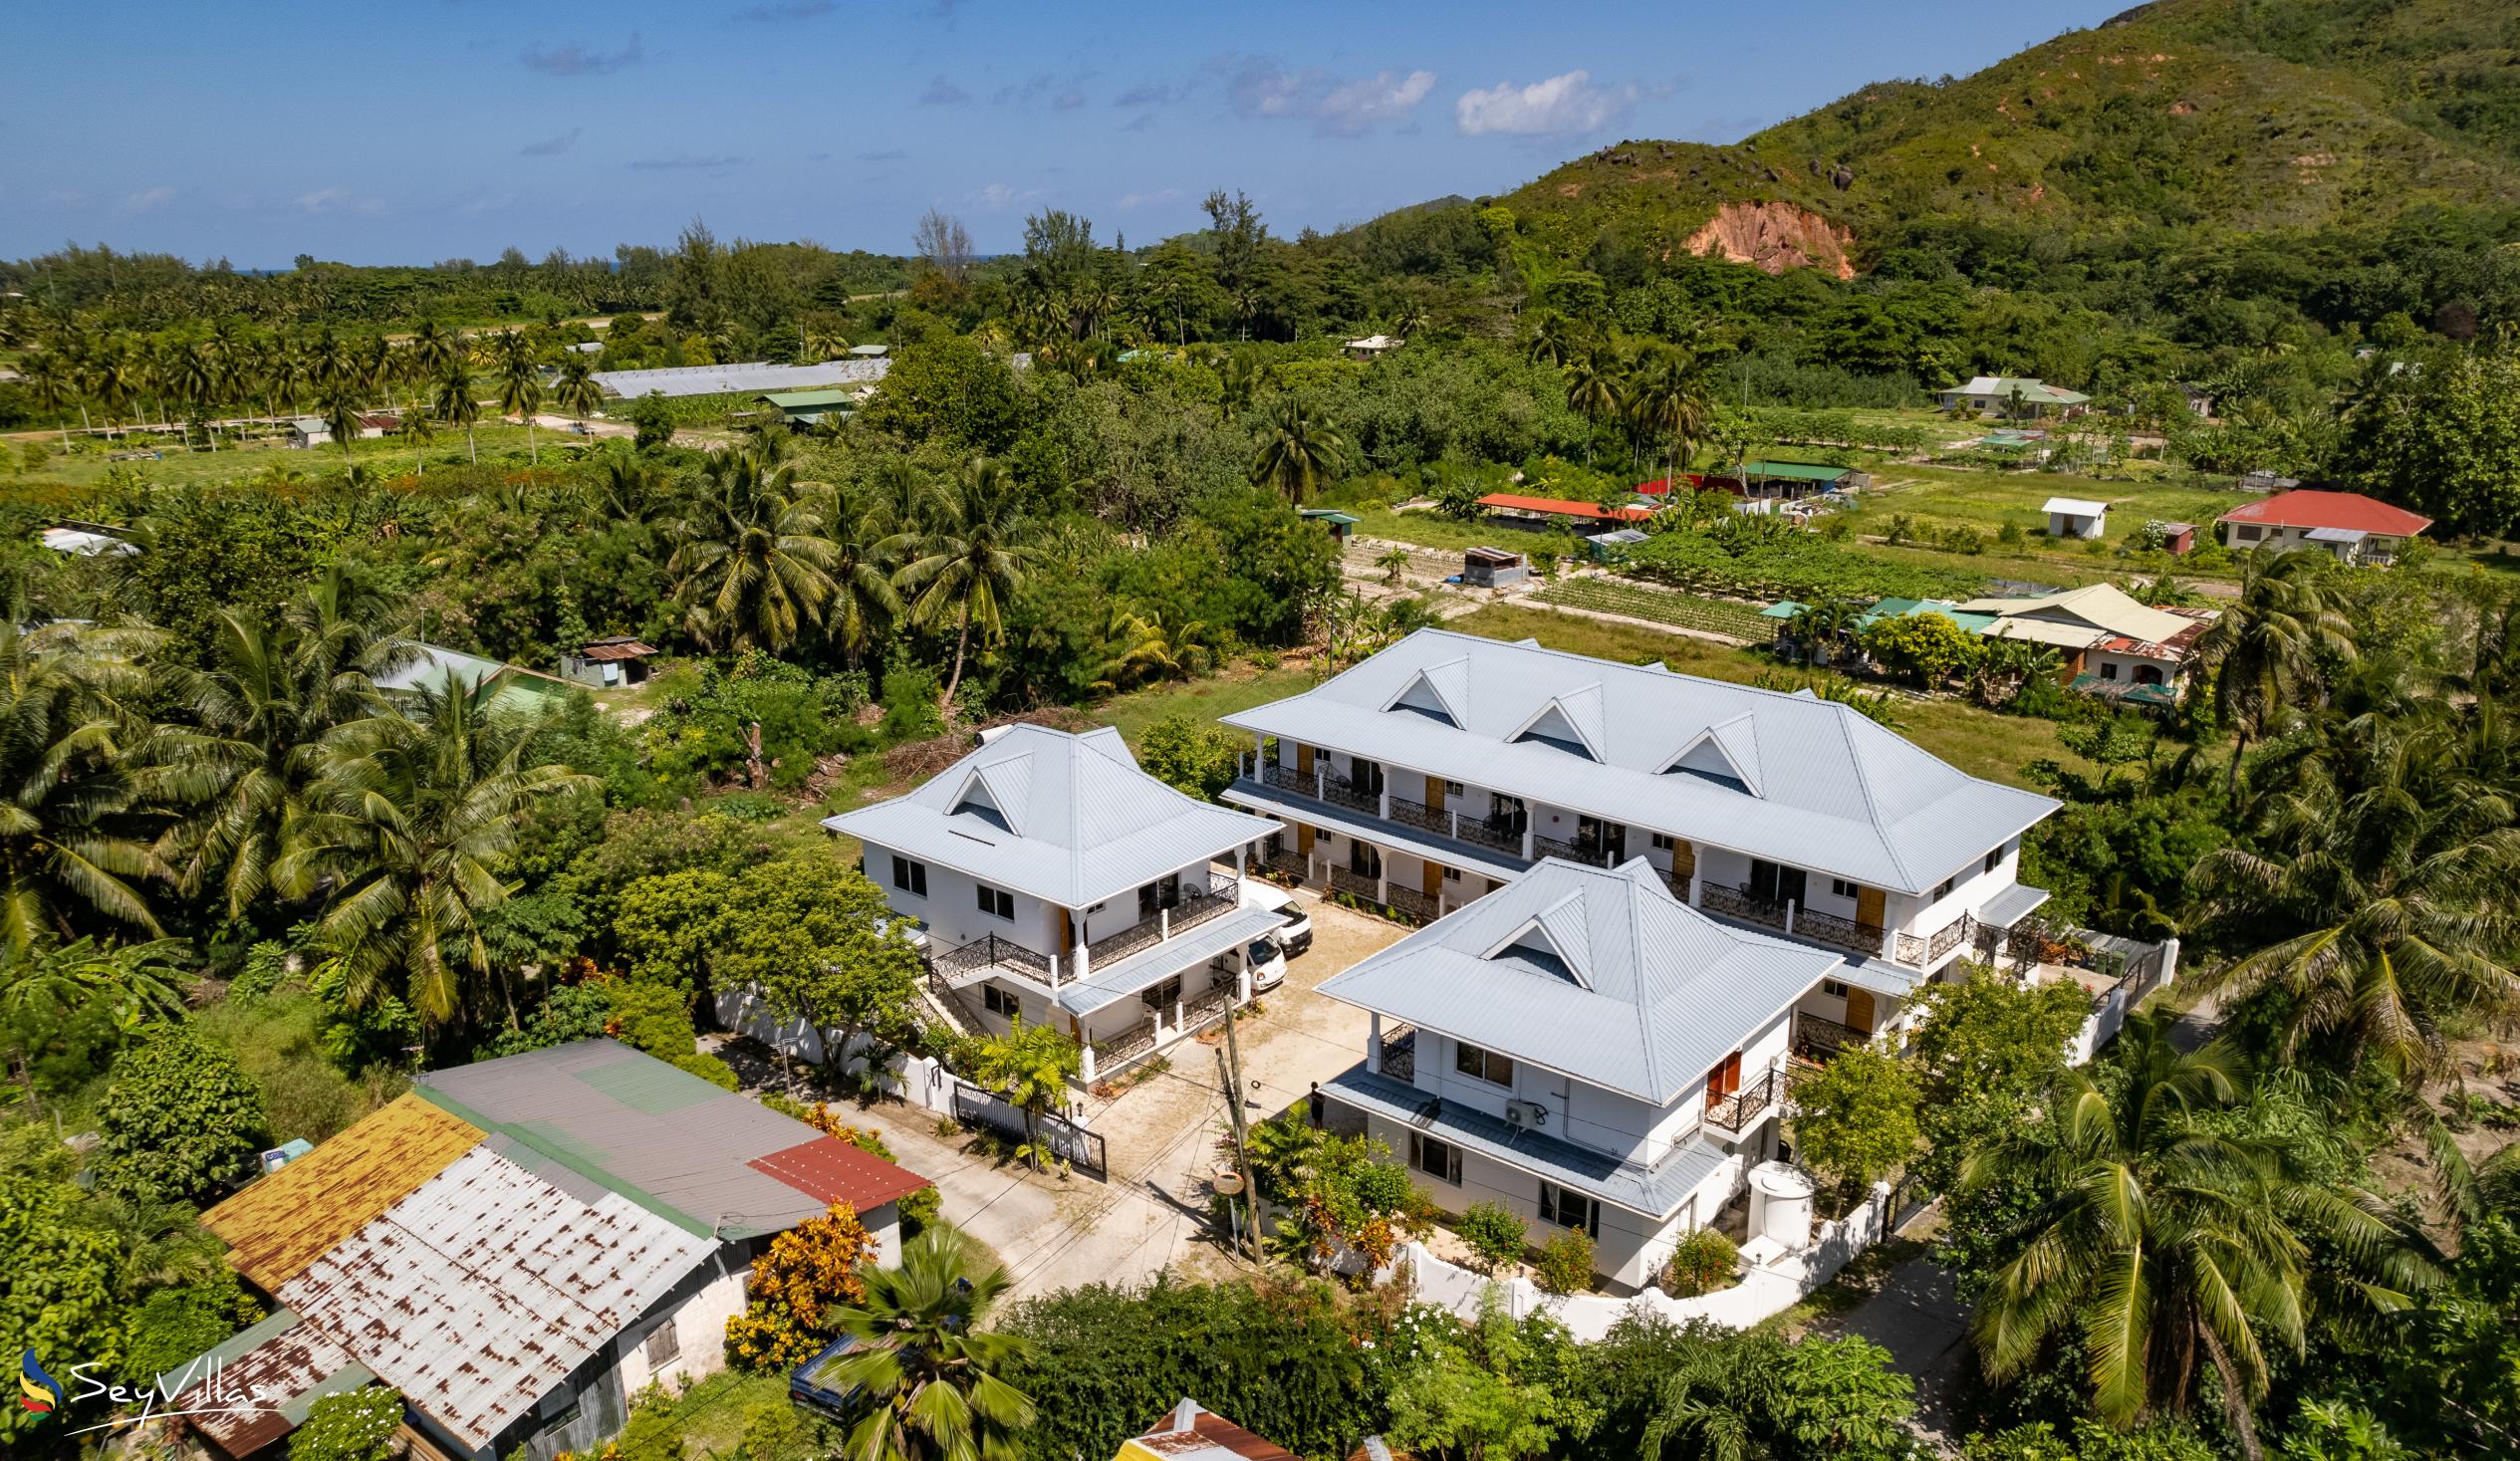 Foto 12: Casadani Luxury Guest House - Aussenbereich - Praslin (Seychellen)